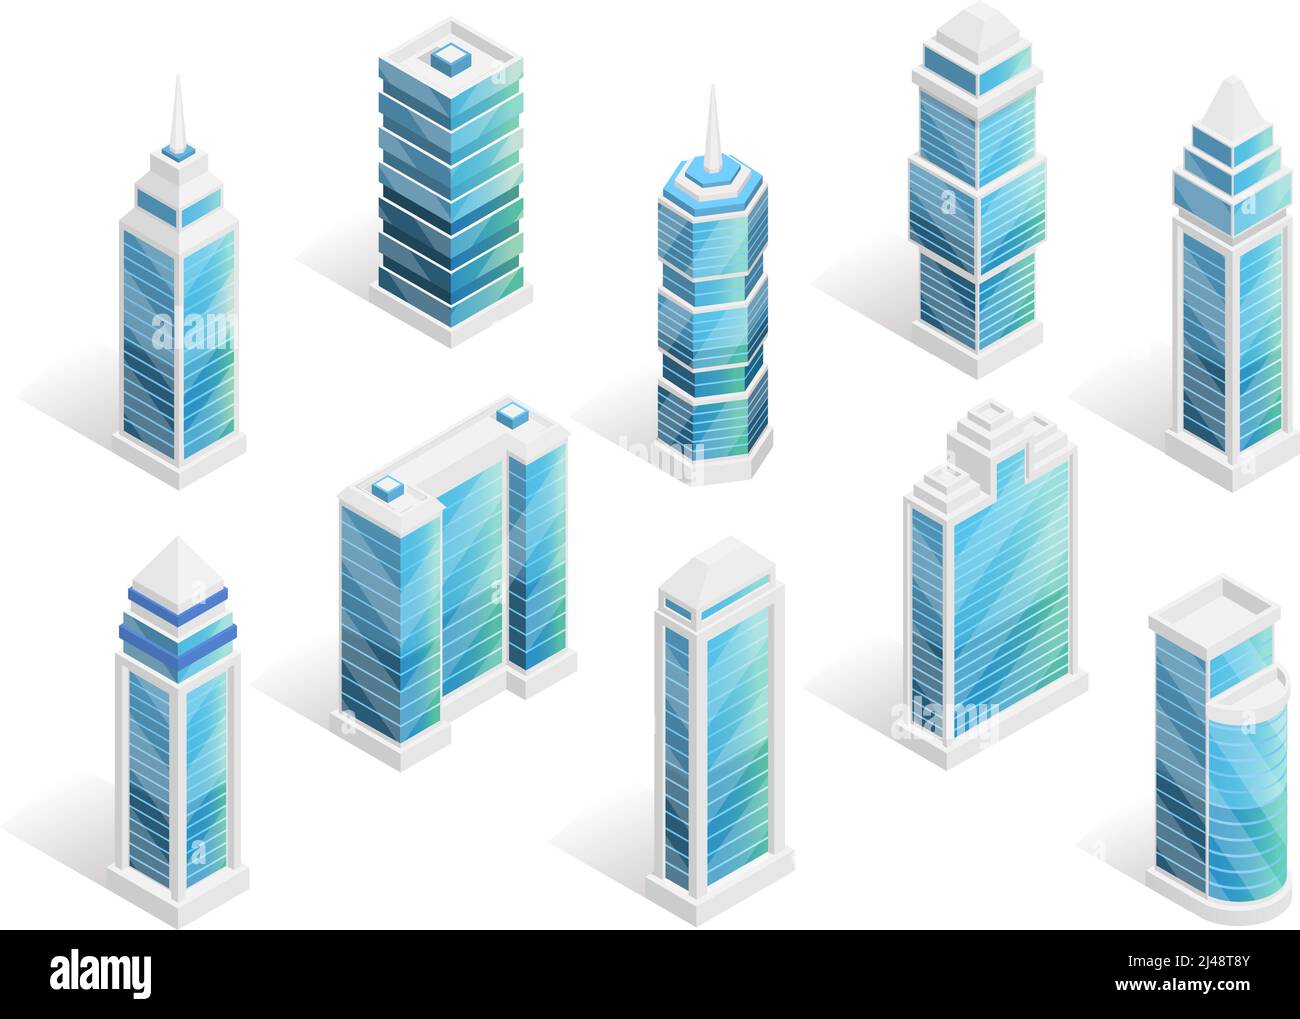 Stadthäuser isometrischen Satz mit modernen Gebäuden isoliert Vektor-Illustration Stock Vektor